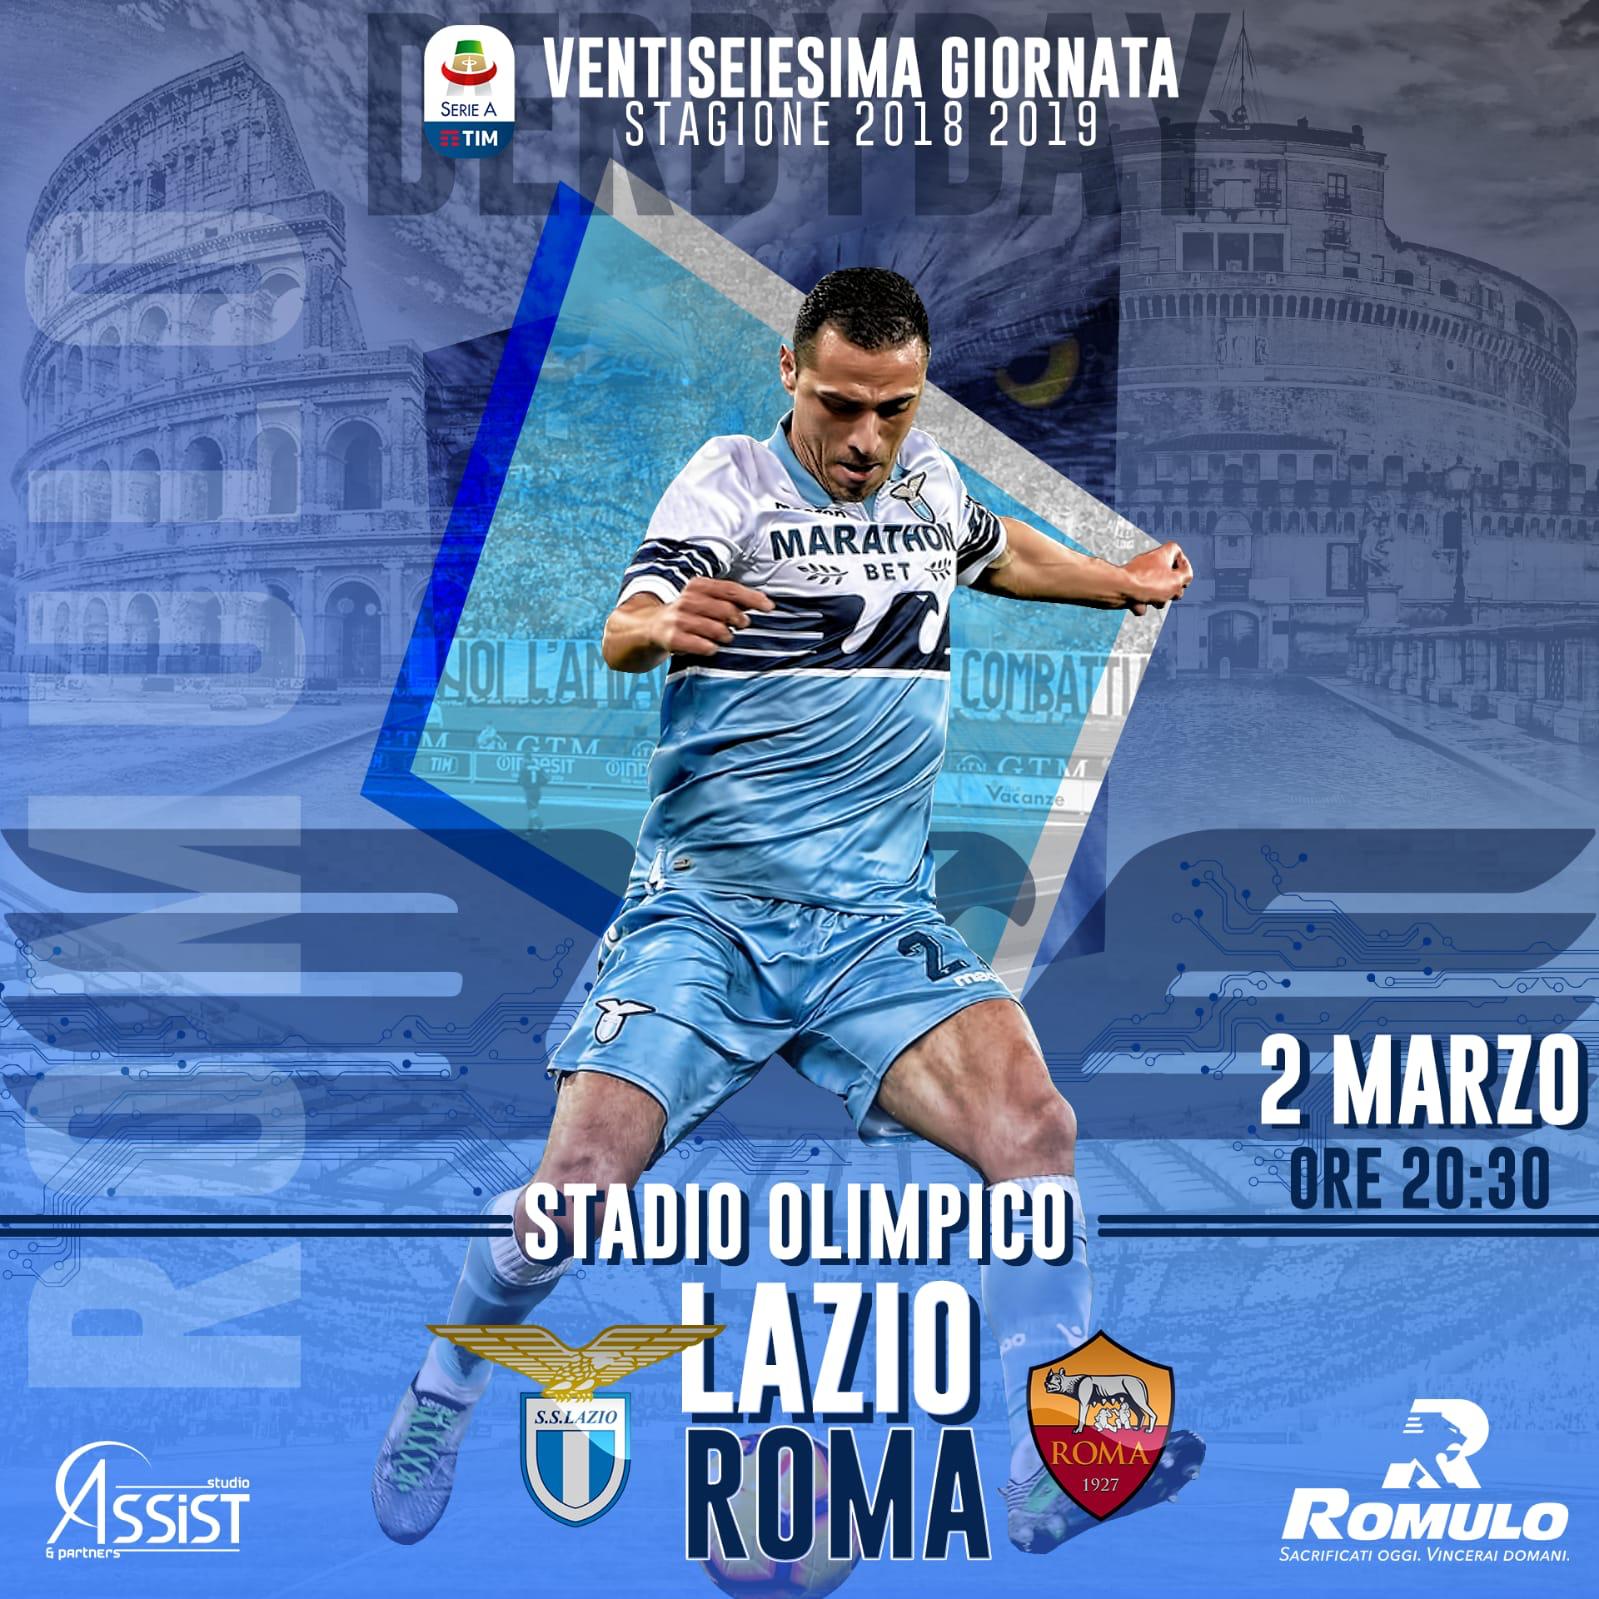 romulo-lazio-roma-derby Si accendono le luci sul derby: la Lazio di Romulo ospita la Roma